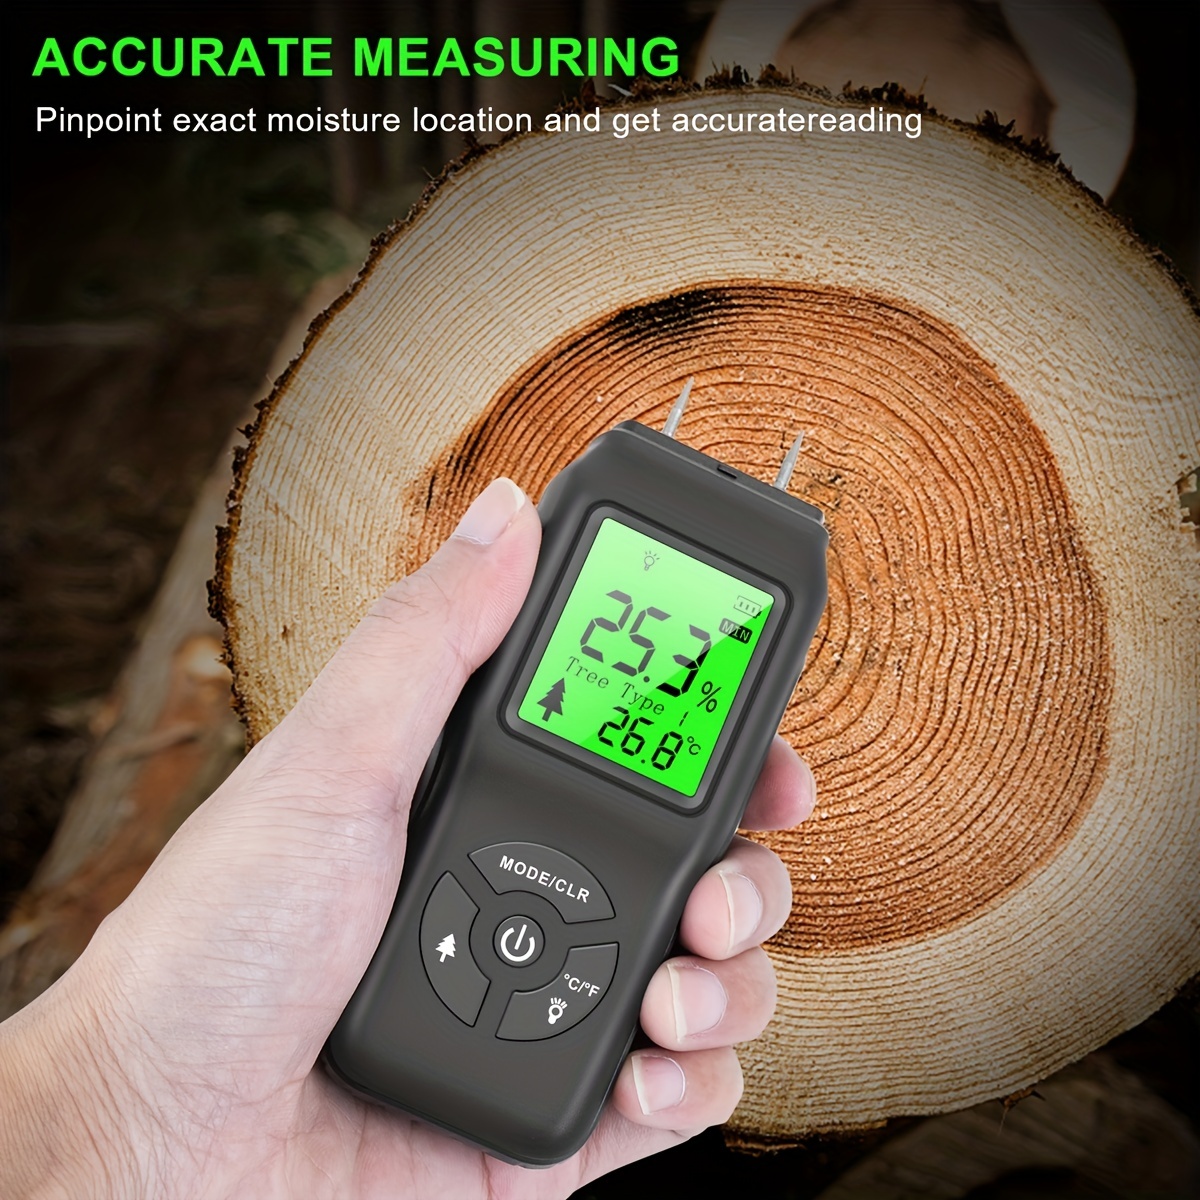 Détecteur d’humidité pour le bois, mesure avec broche ou avec sonde.